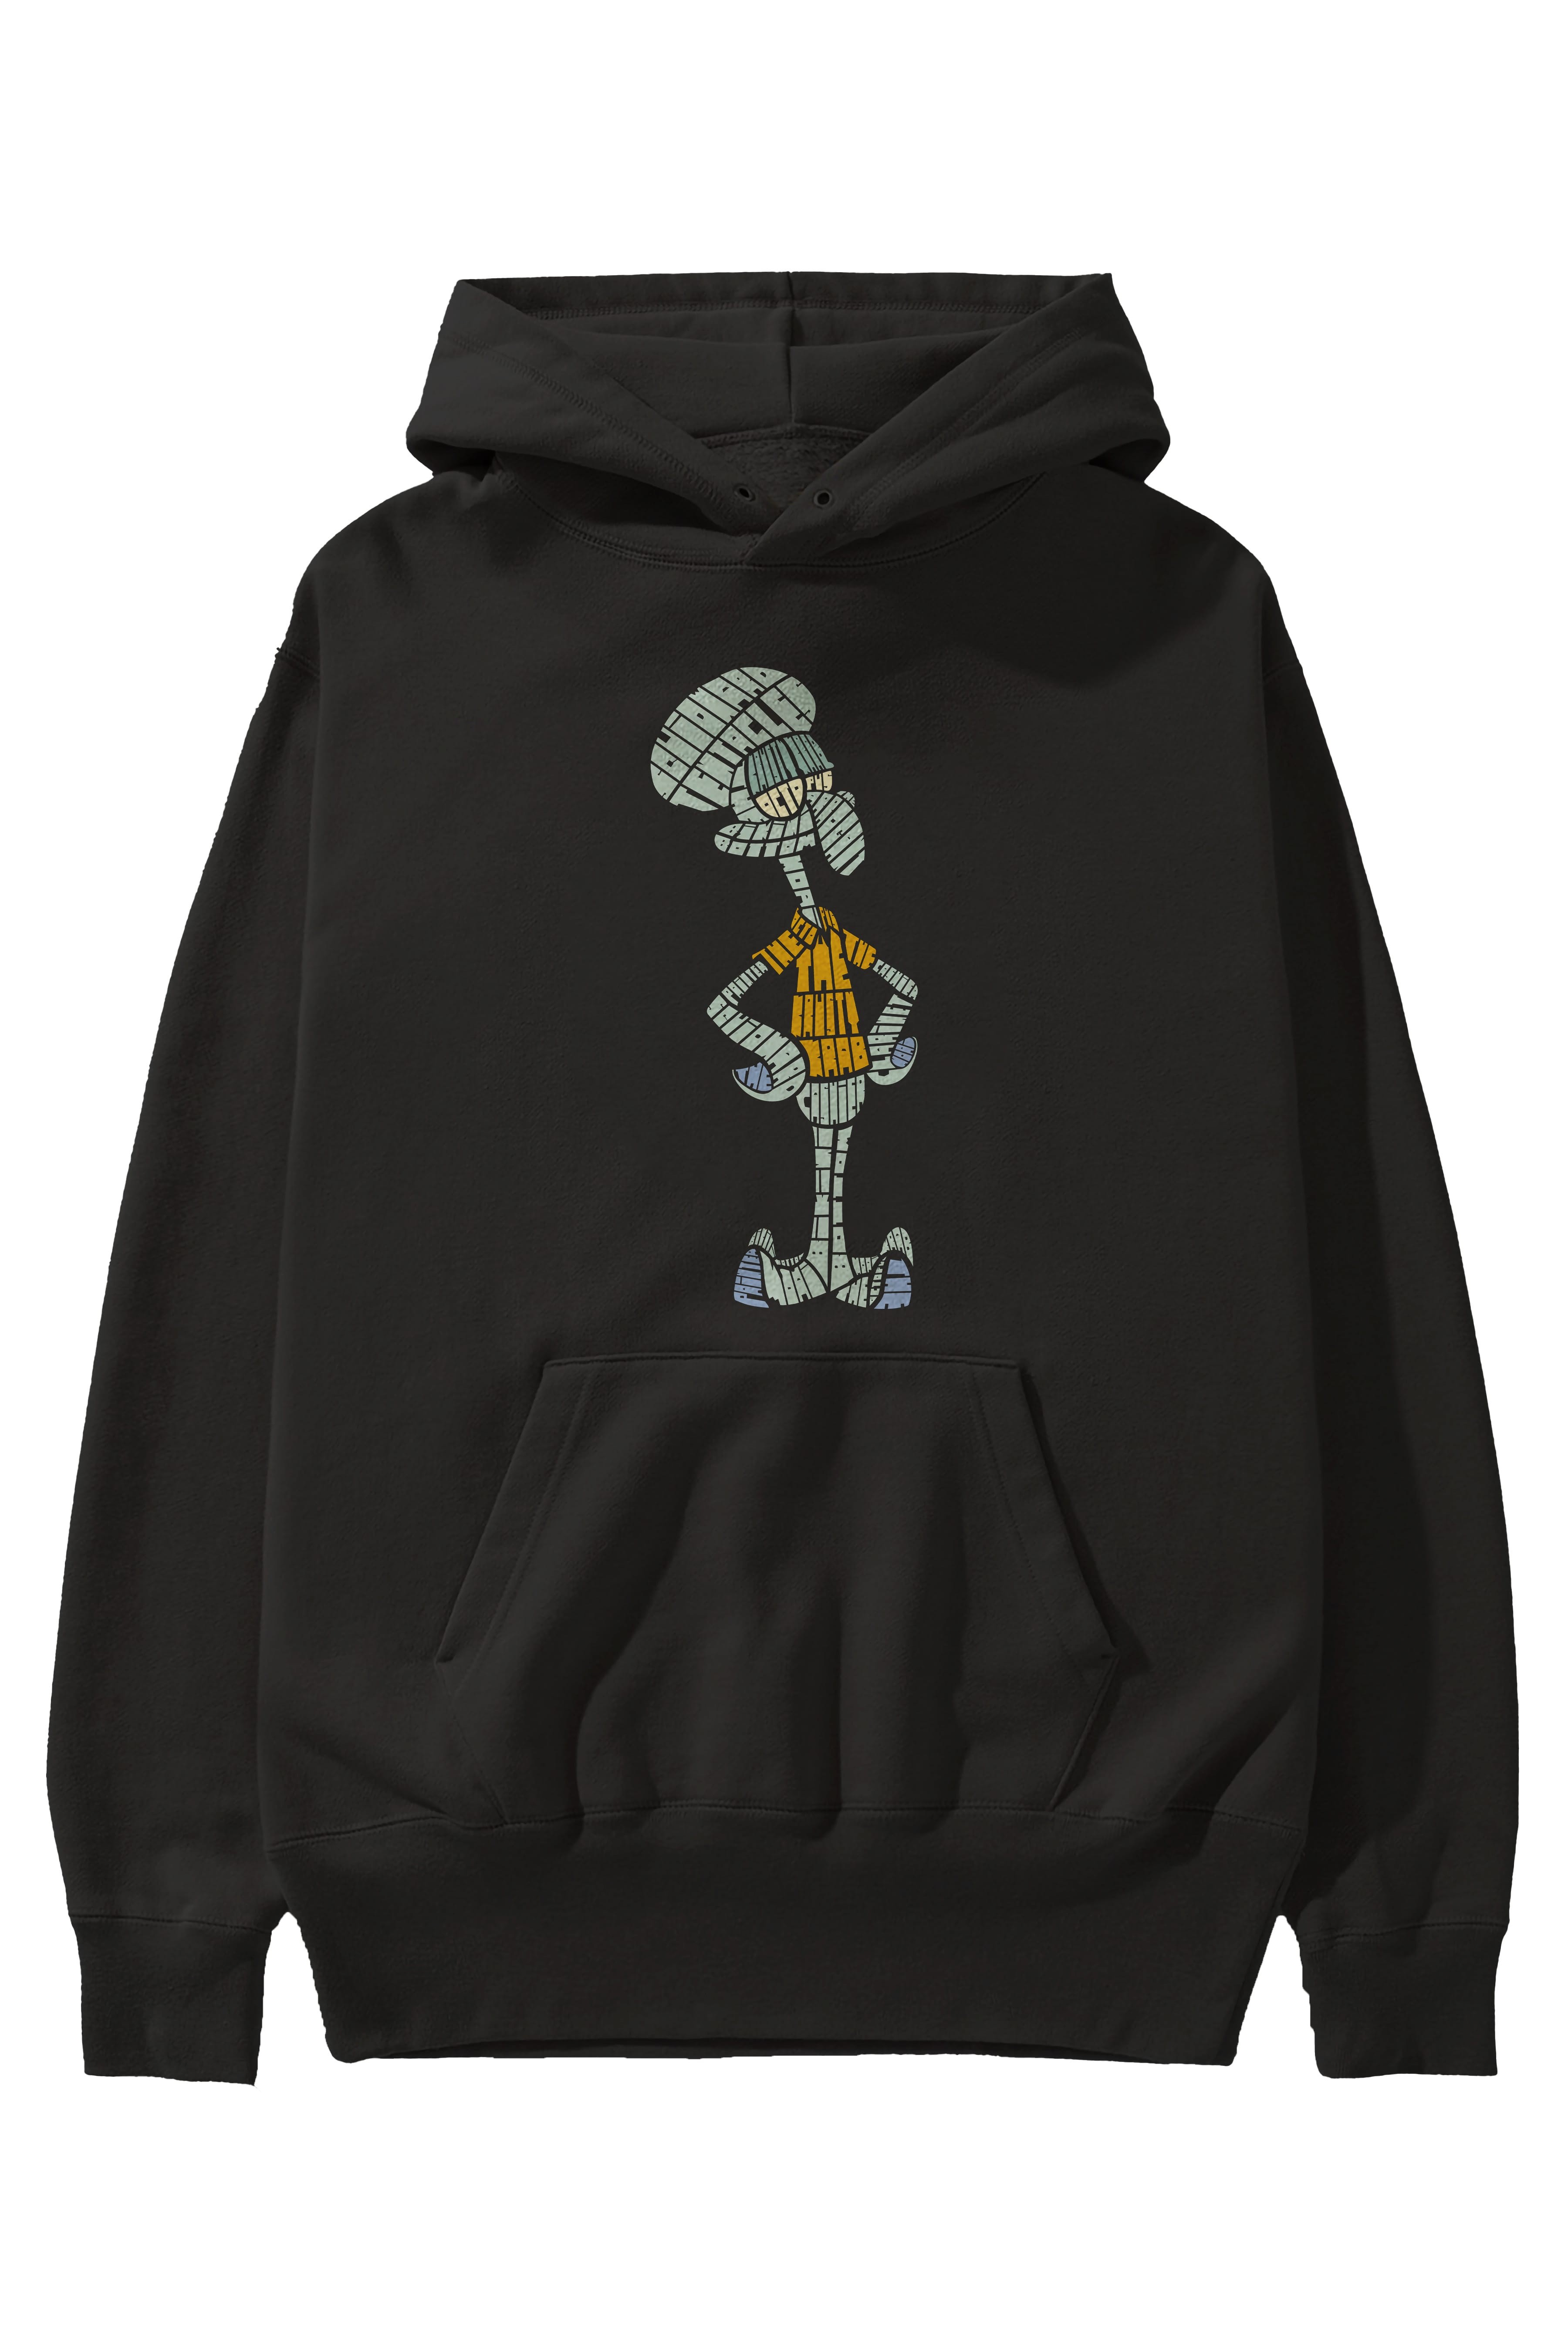 Squidward Ön Baskılı Hoodie Oversize Kapüşonlu Sweatshirt Erkek Kadın Unisex